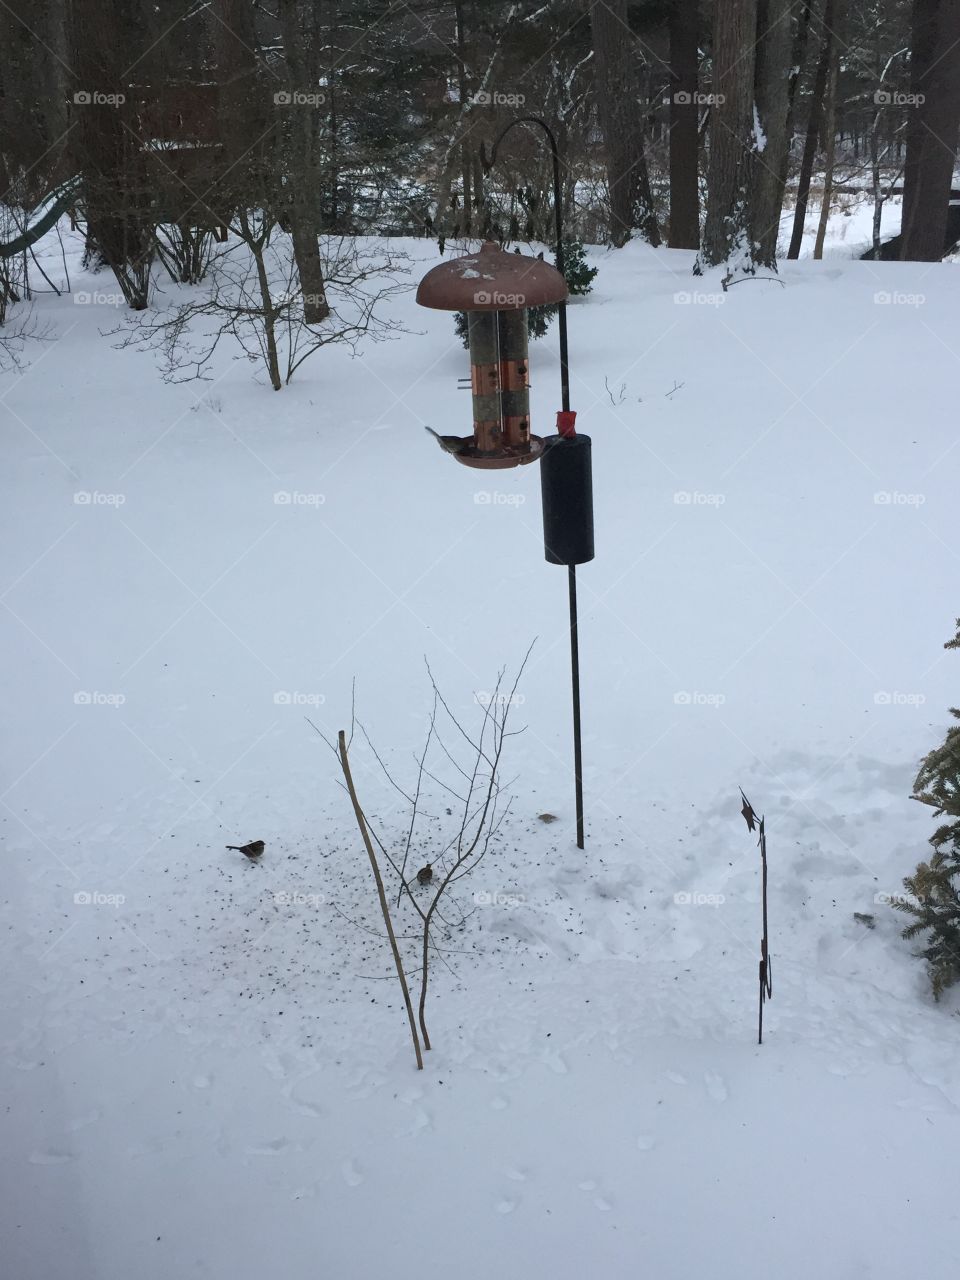 Birdies in the snow 